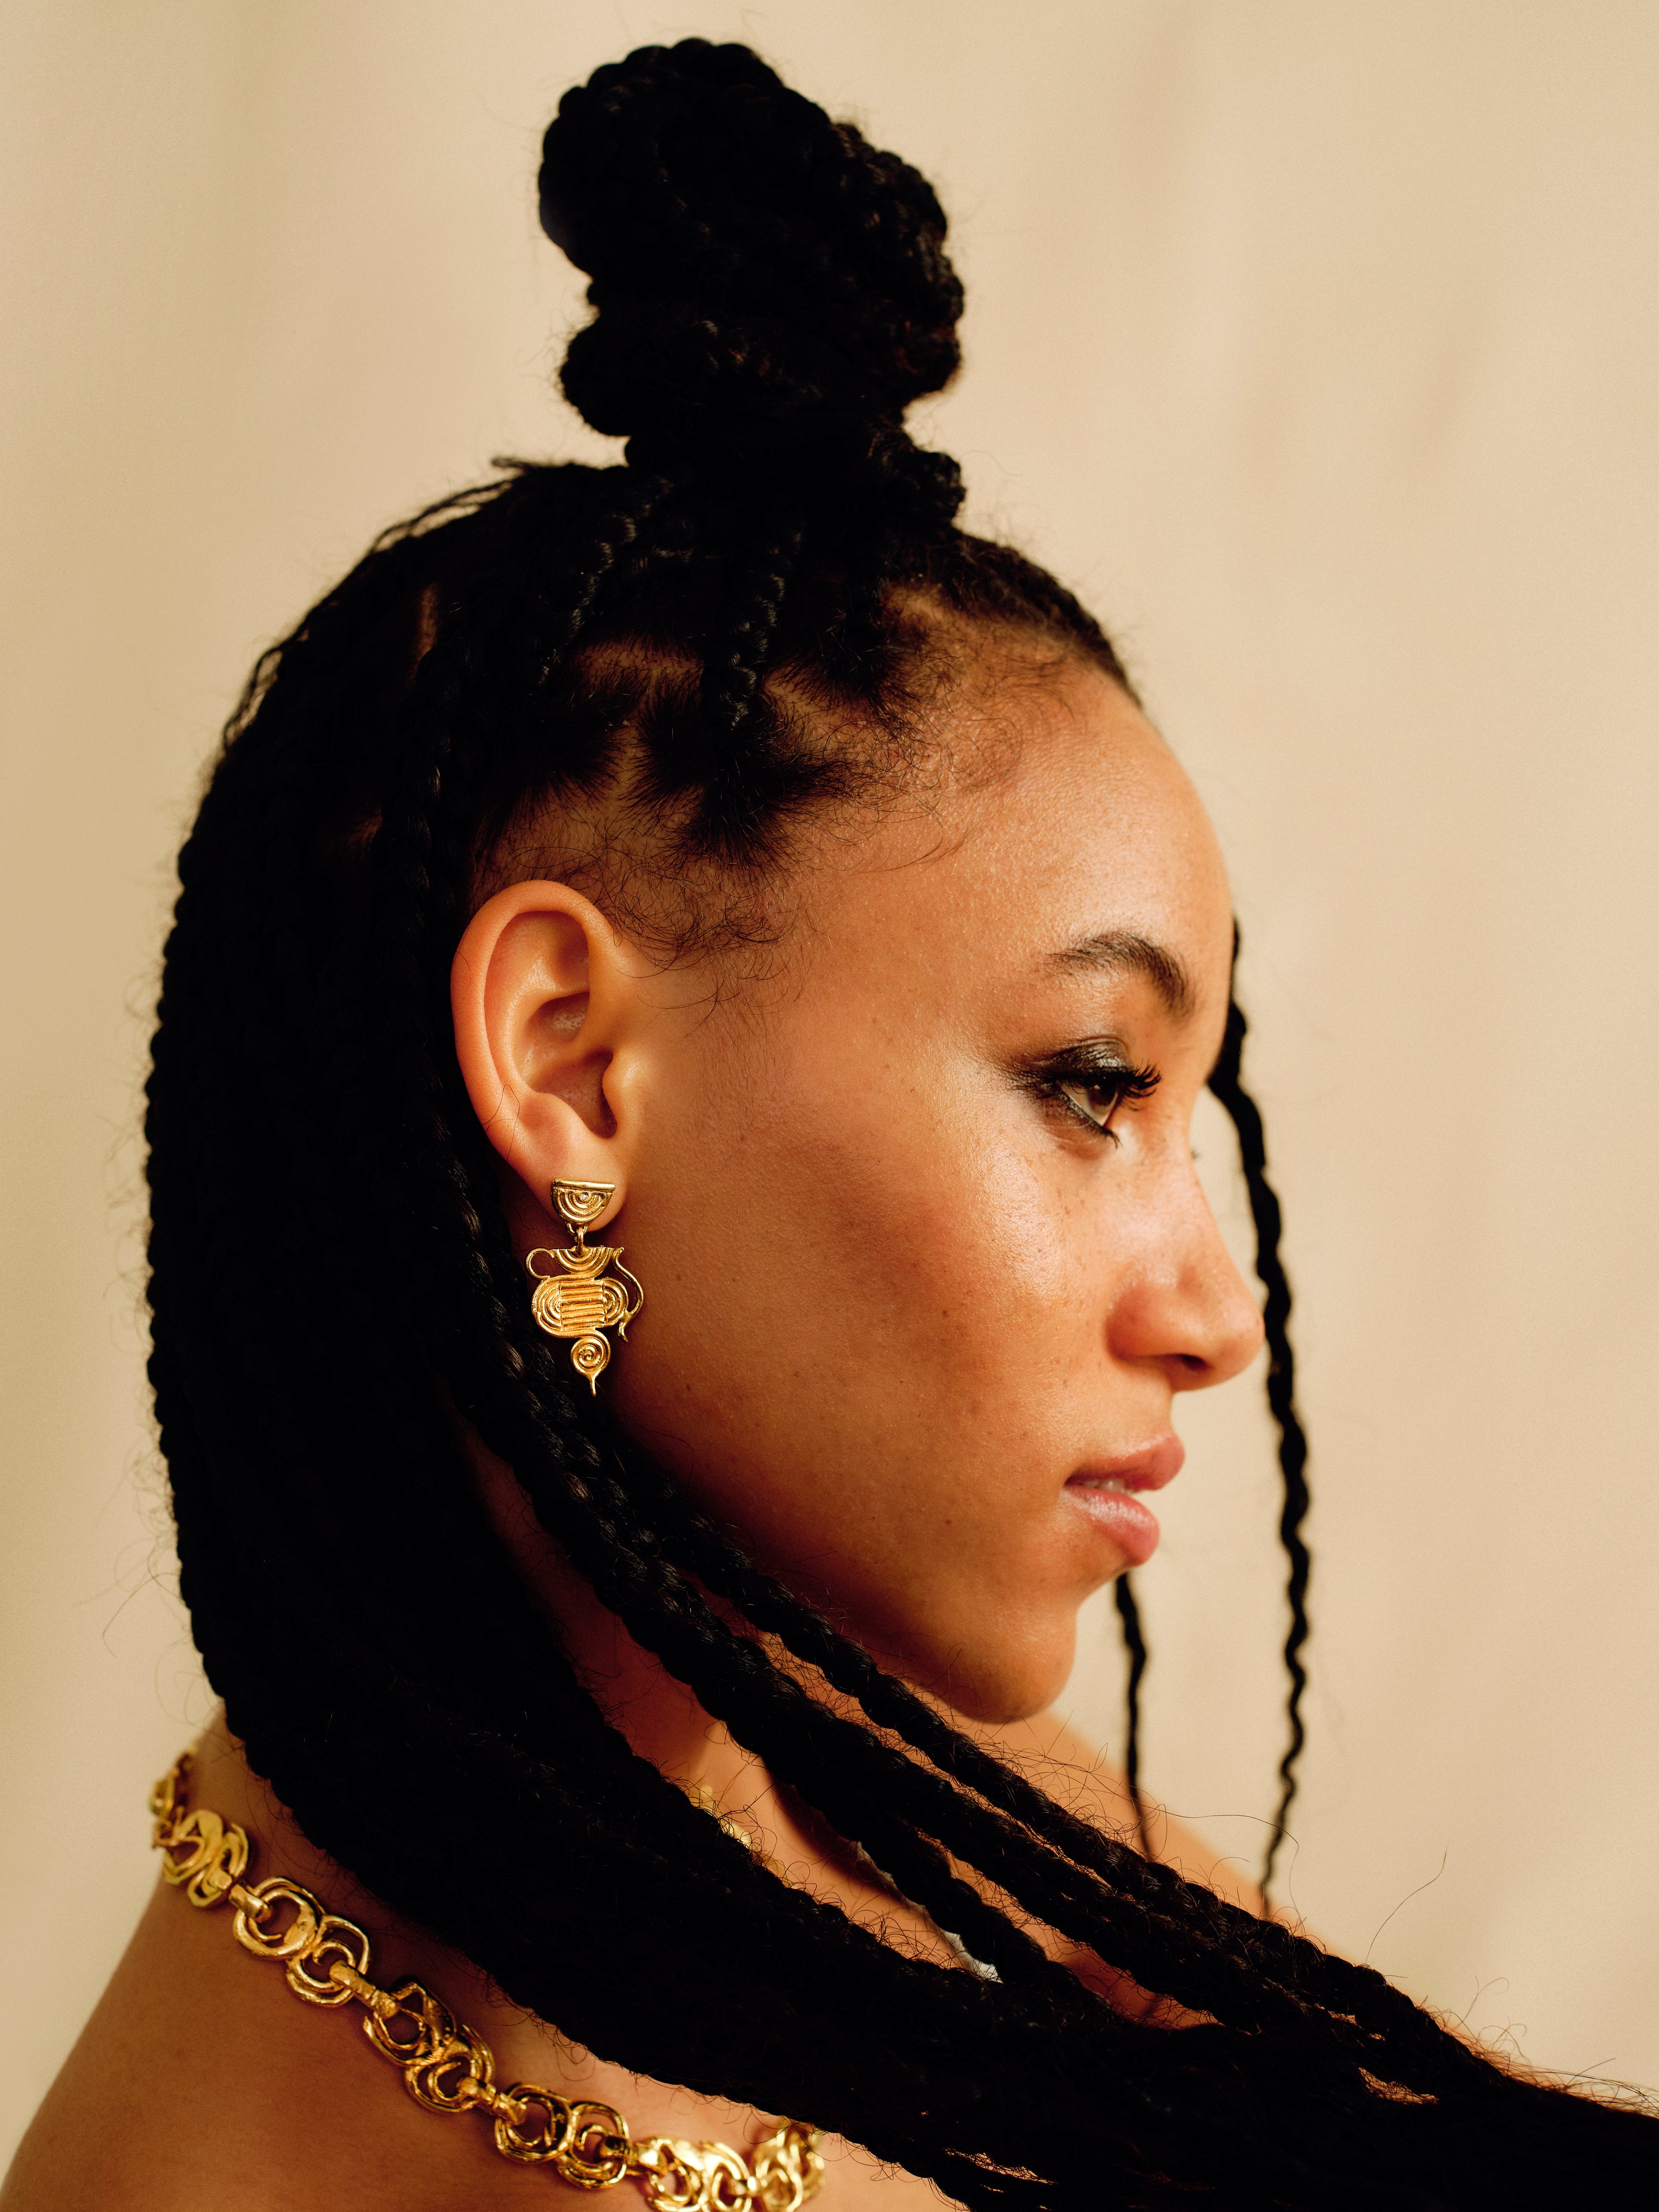 The Nefertiti Earrings